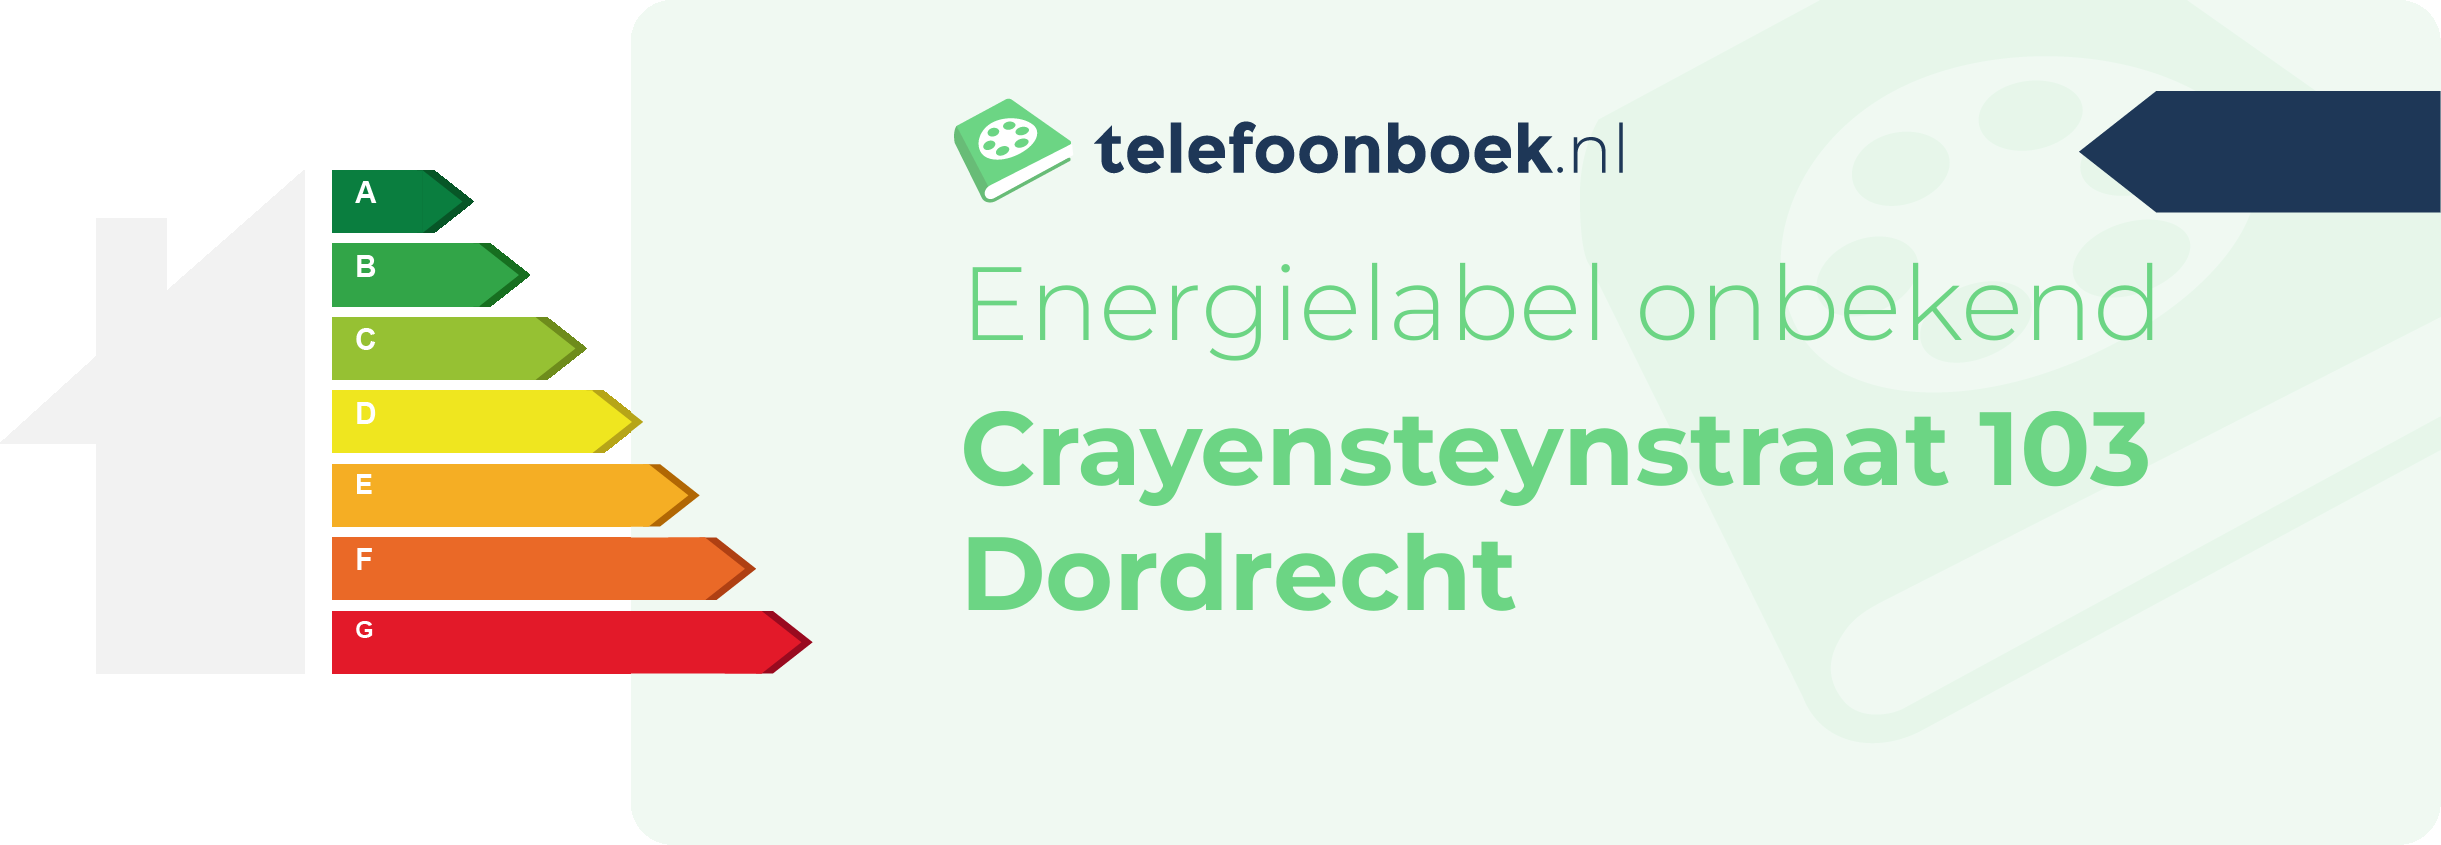 Energielabel Crayensteynstraat 103 Dordrecht